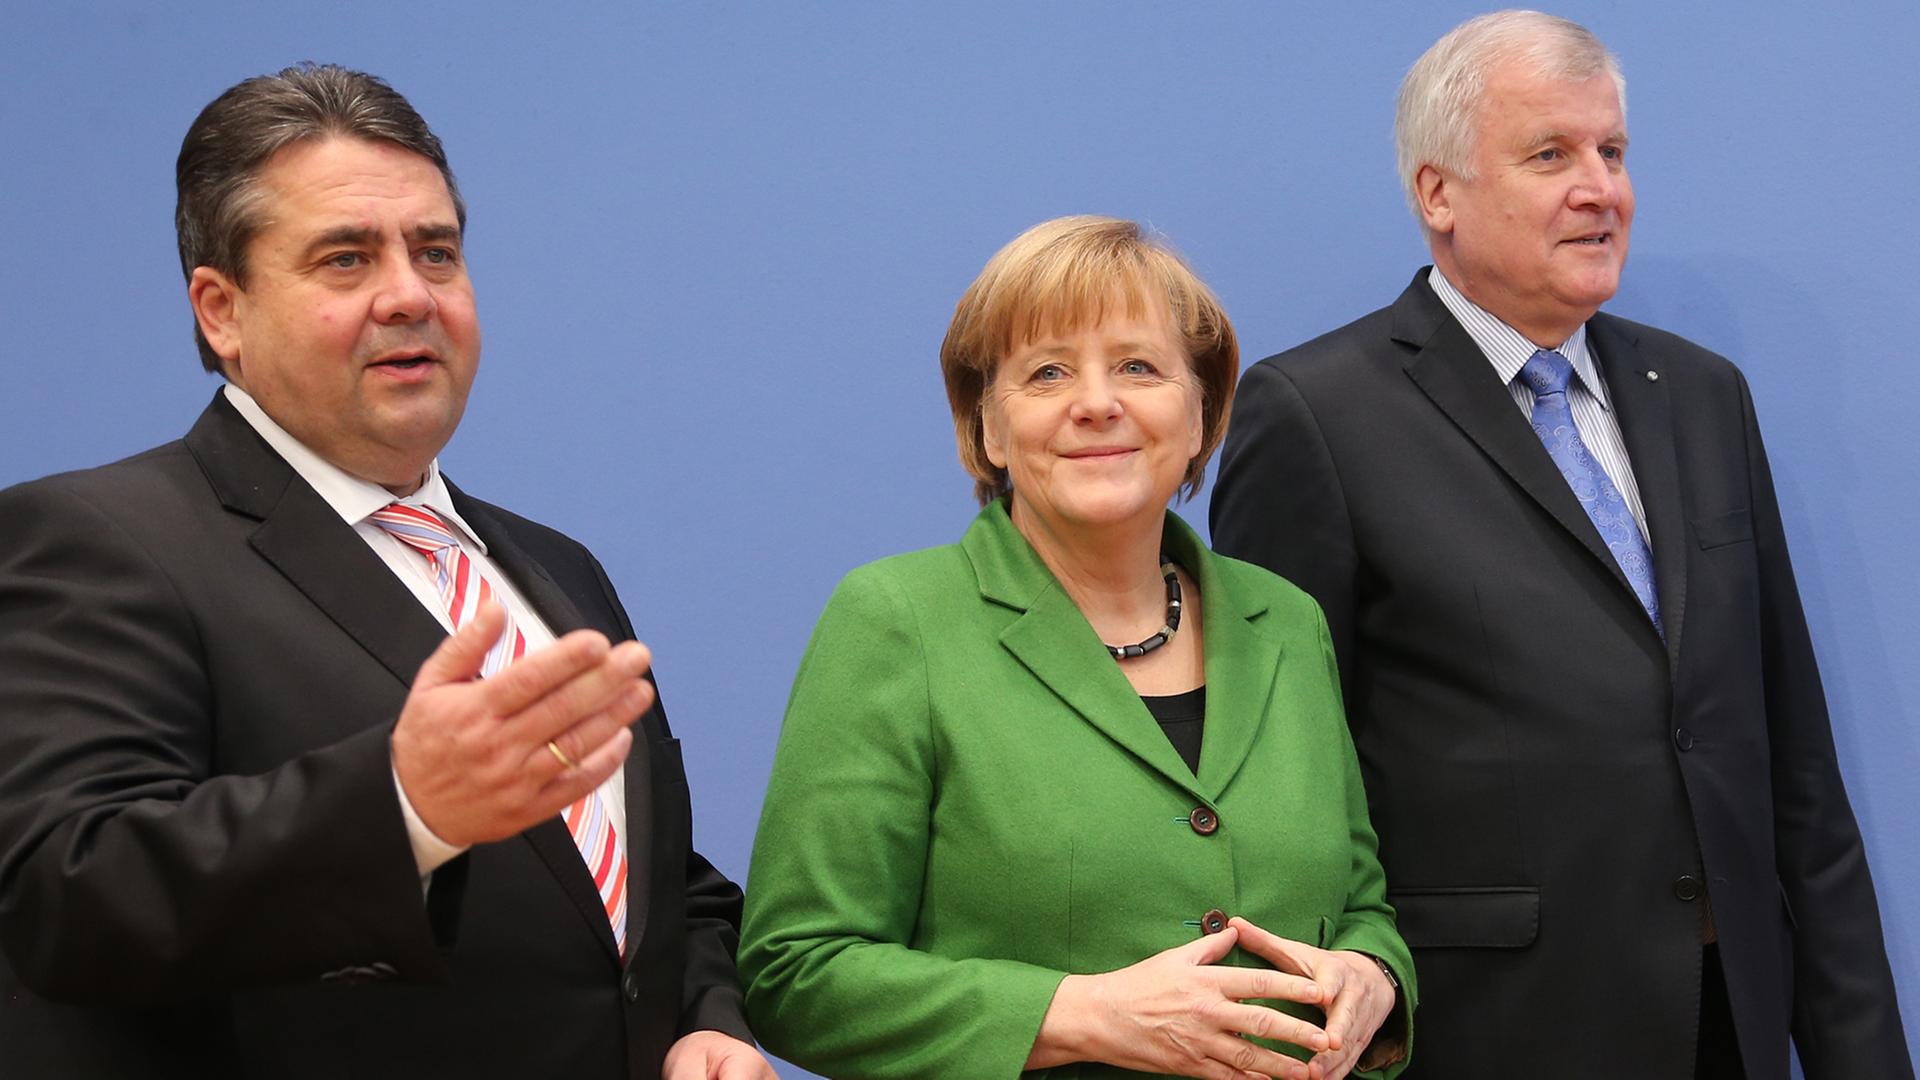 Der SPD-Parteivorsitzende Sigmar Gabriel (von links), die amtierende Bundeskanzlerin Angela Merkel (CDU) und der CSU-Vorsitzende Horst Seehofer